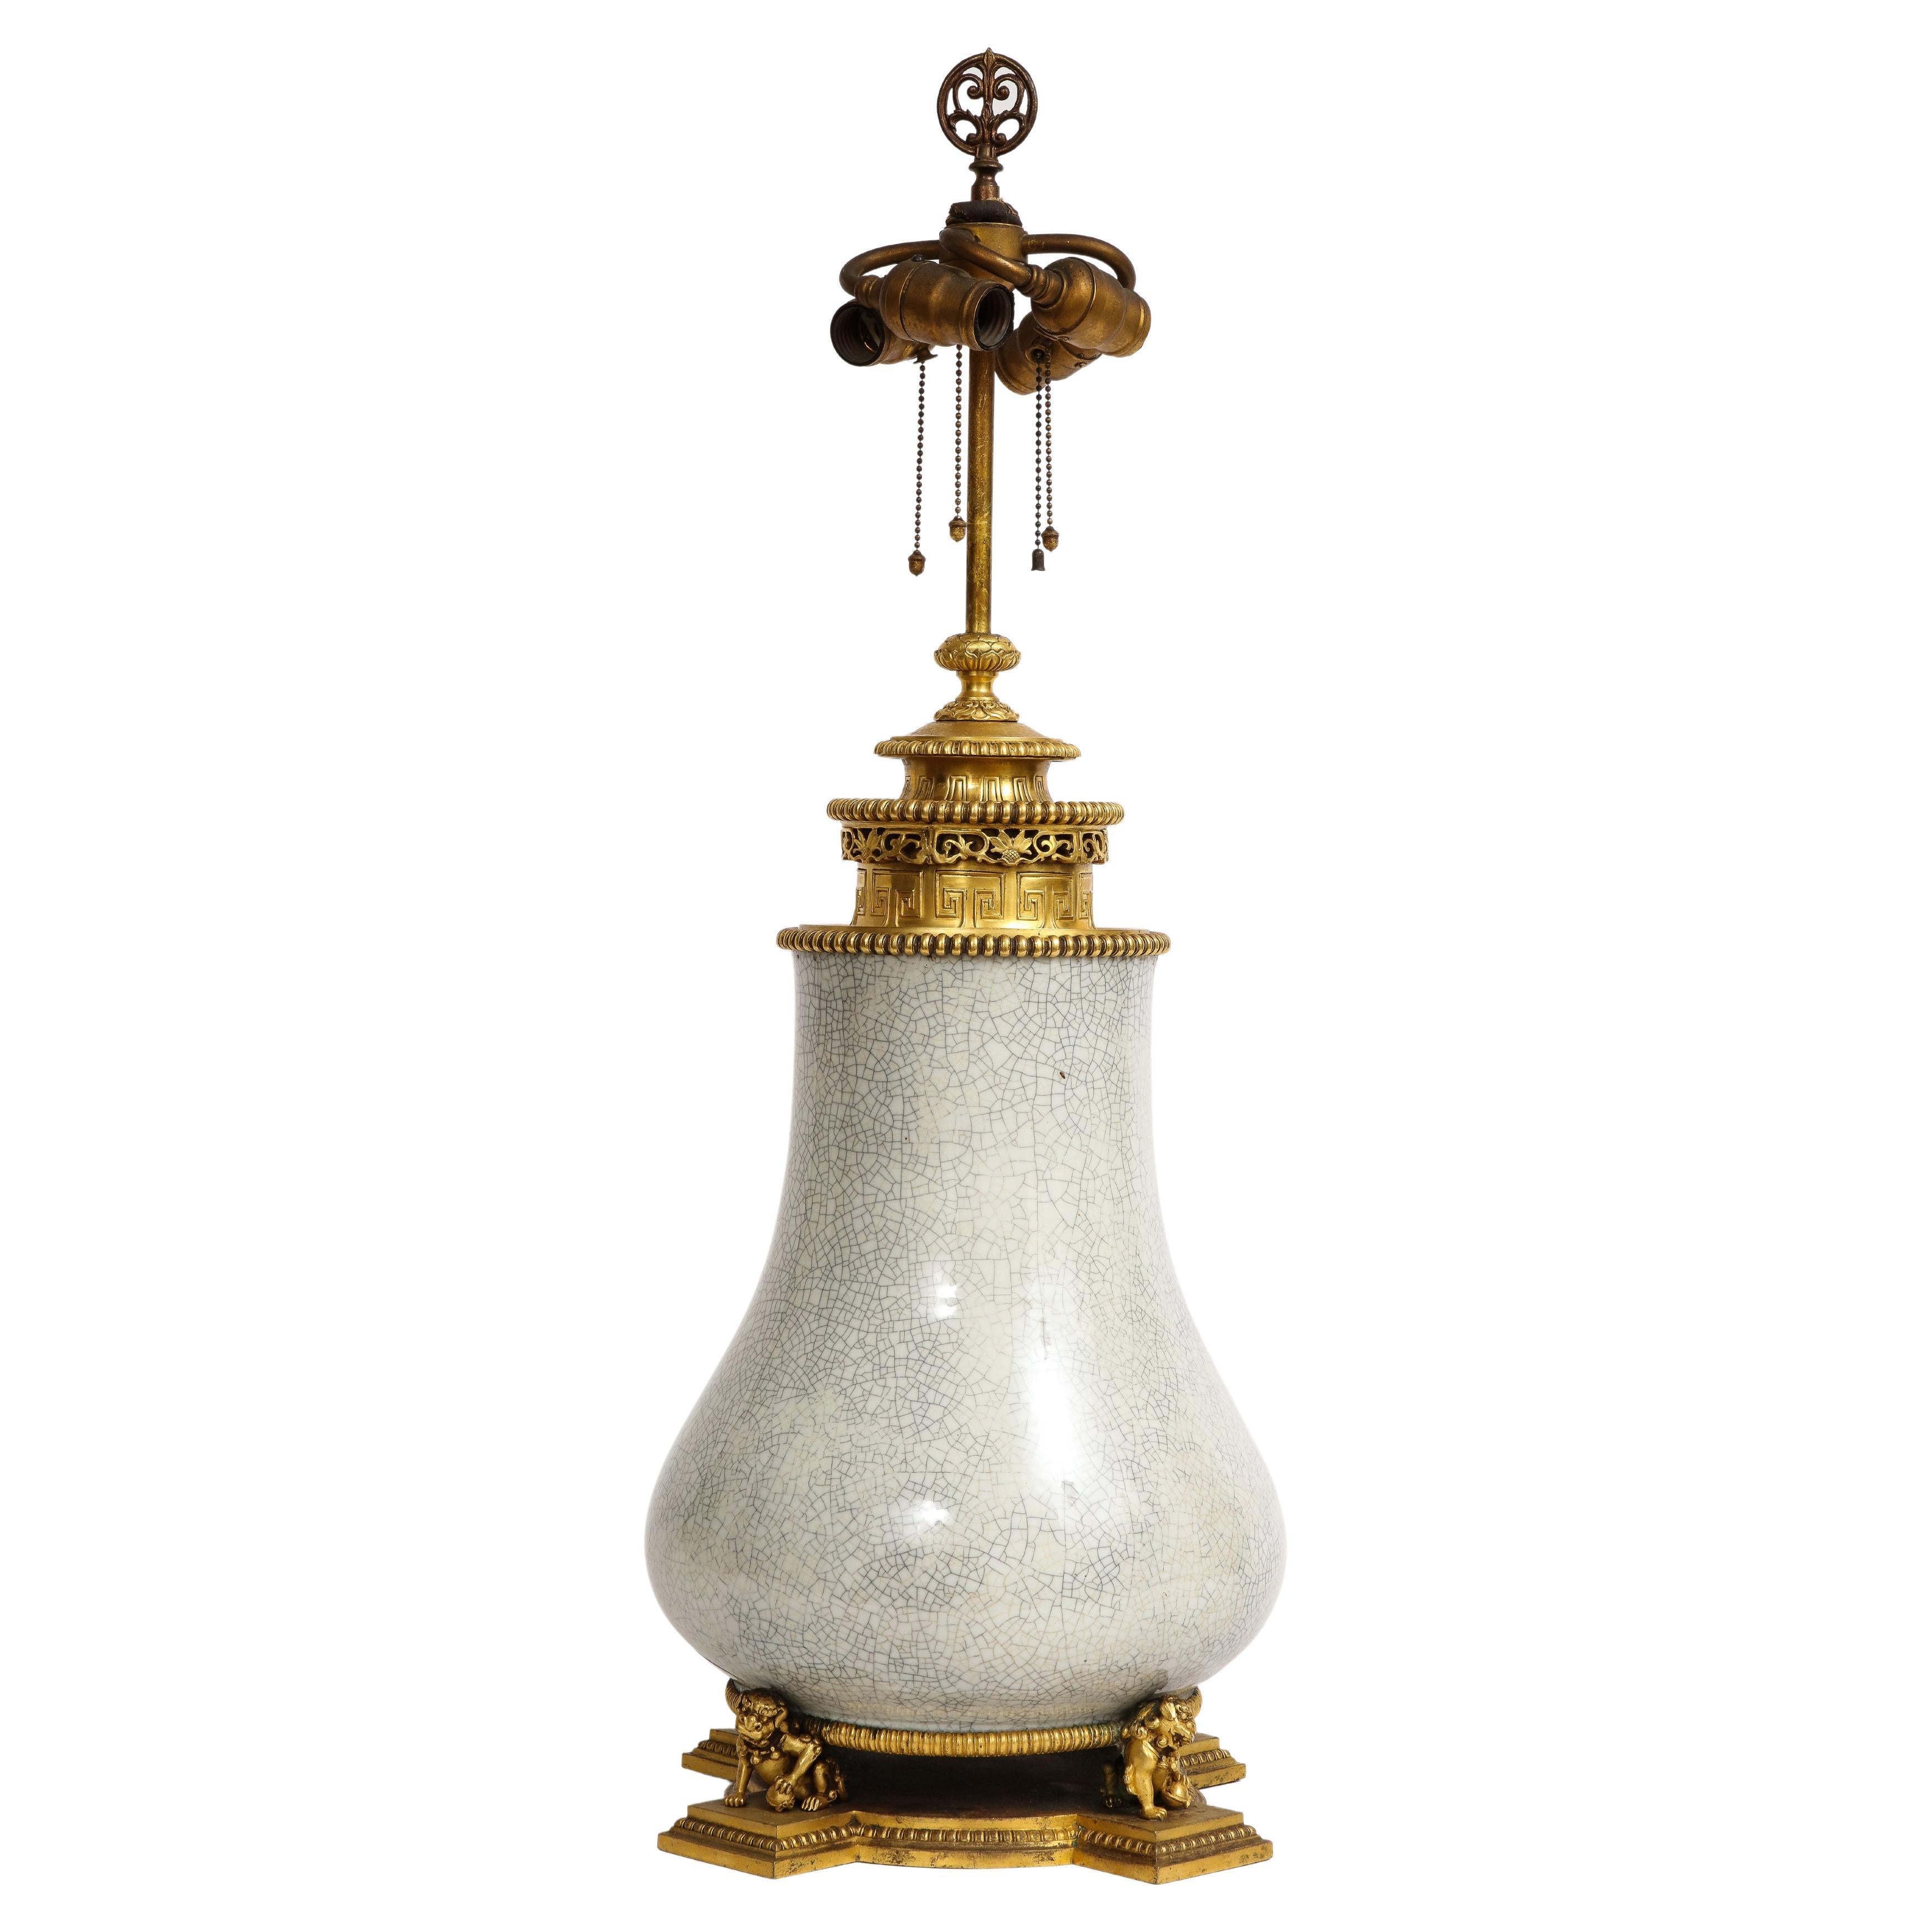 Chinesische Celadon-Porzellanlampe mit Goldbronze-Montierung, markiert E.F Caldwell, 1800er Jahre